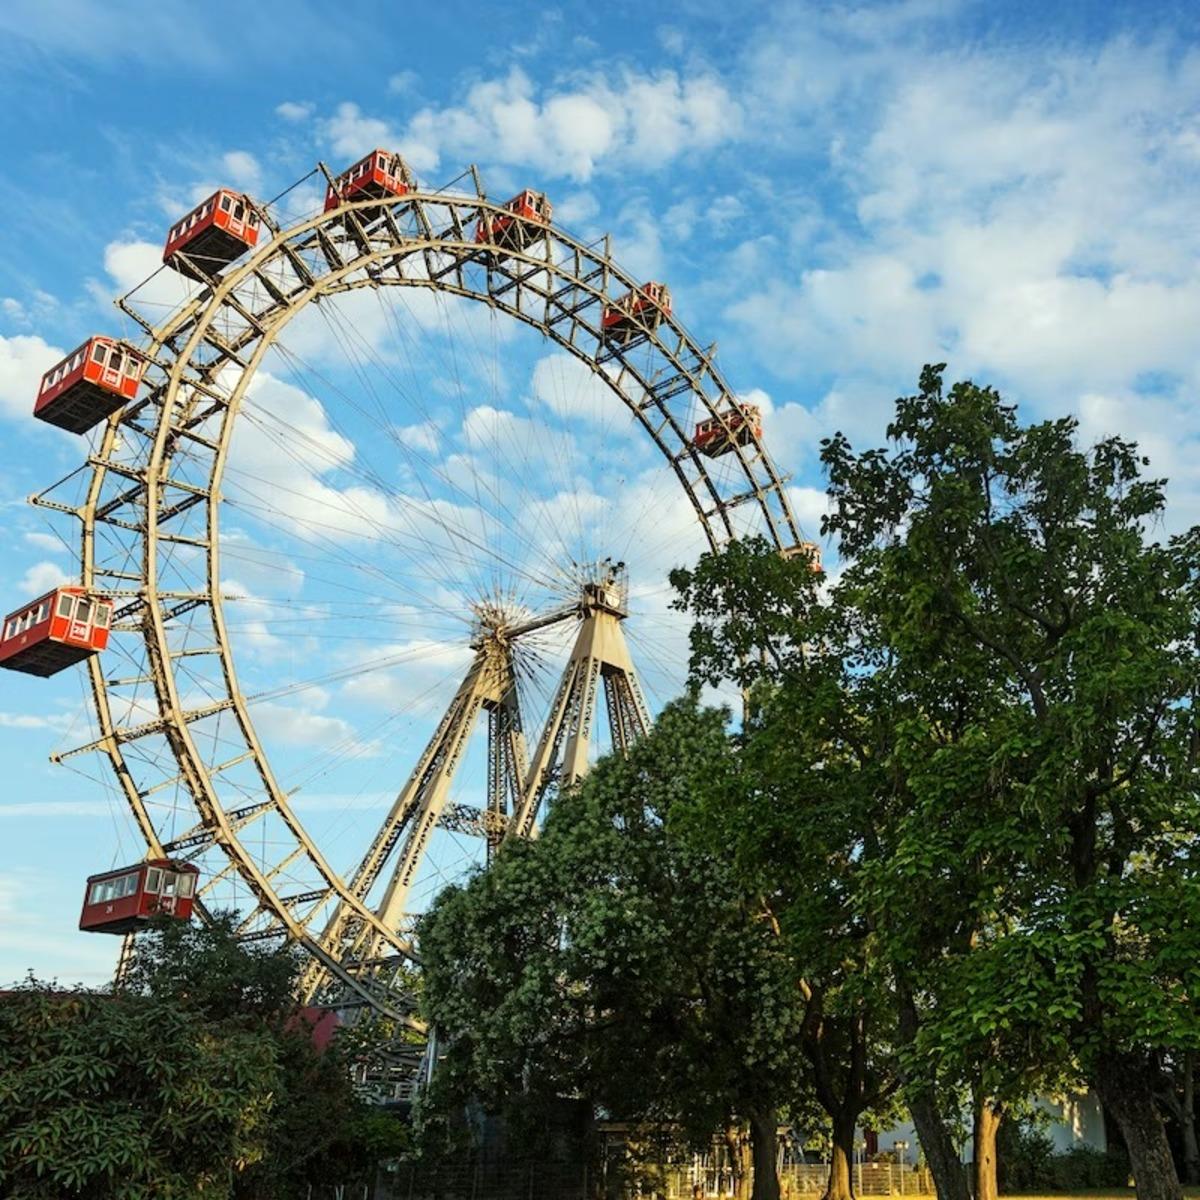 Vienna Giant Ferris Wheel: Skip the line Tickets